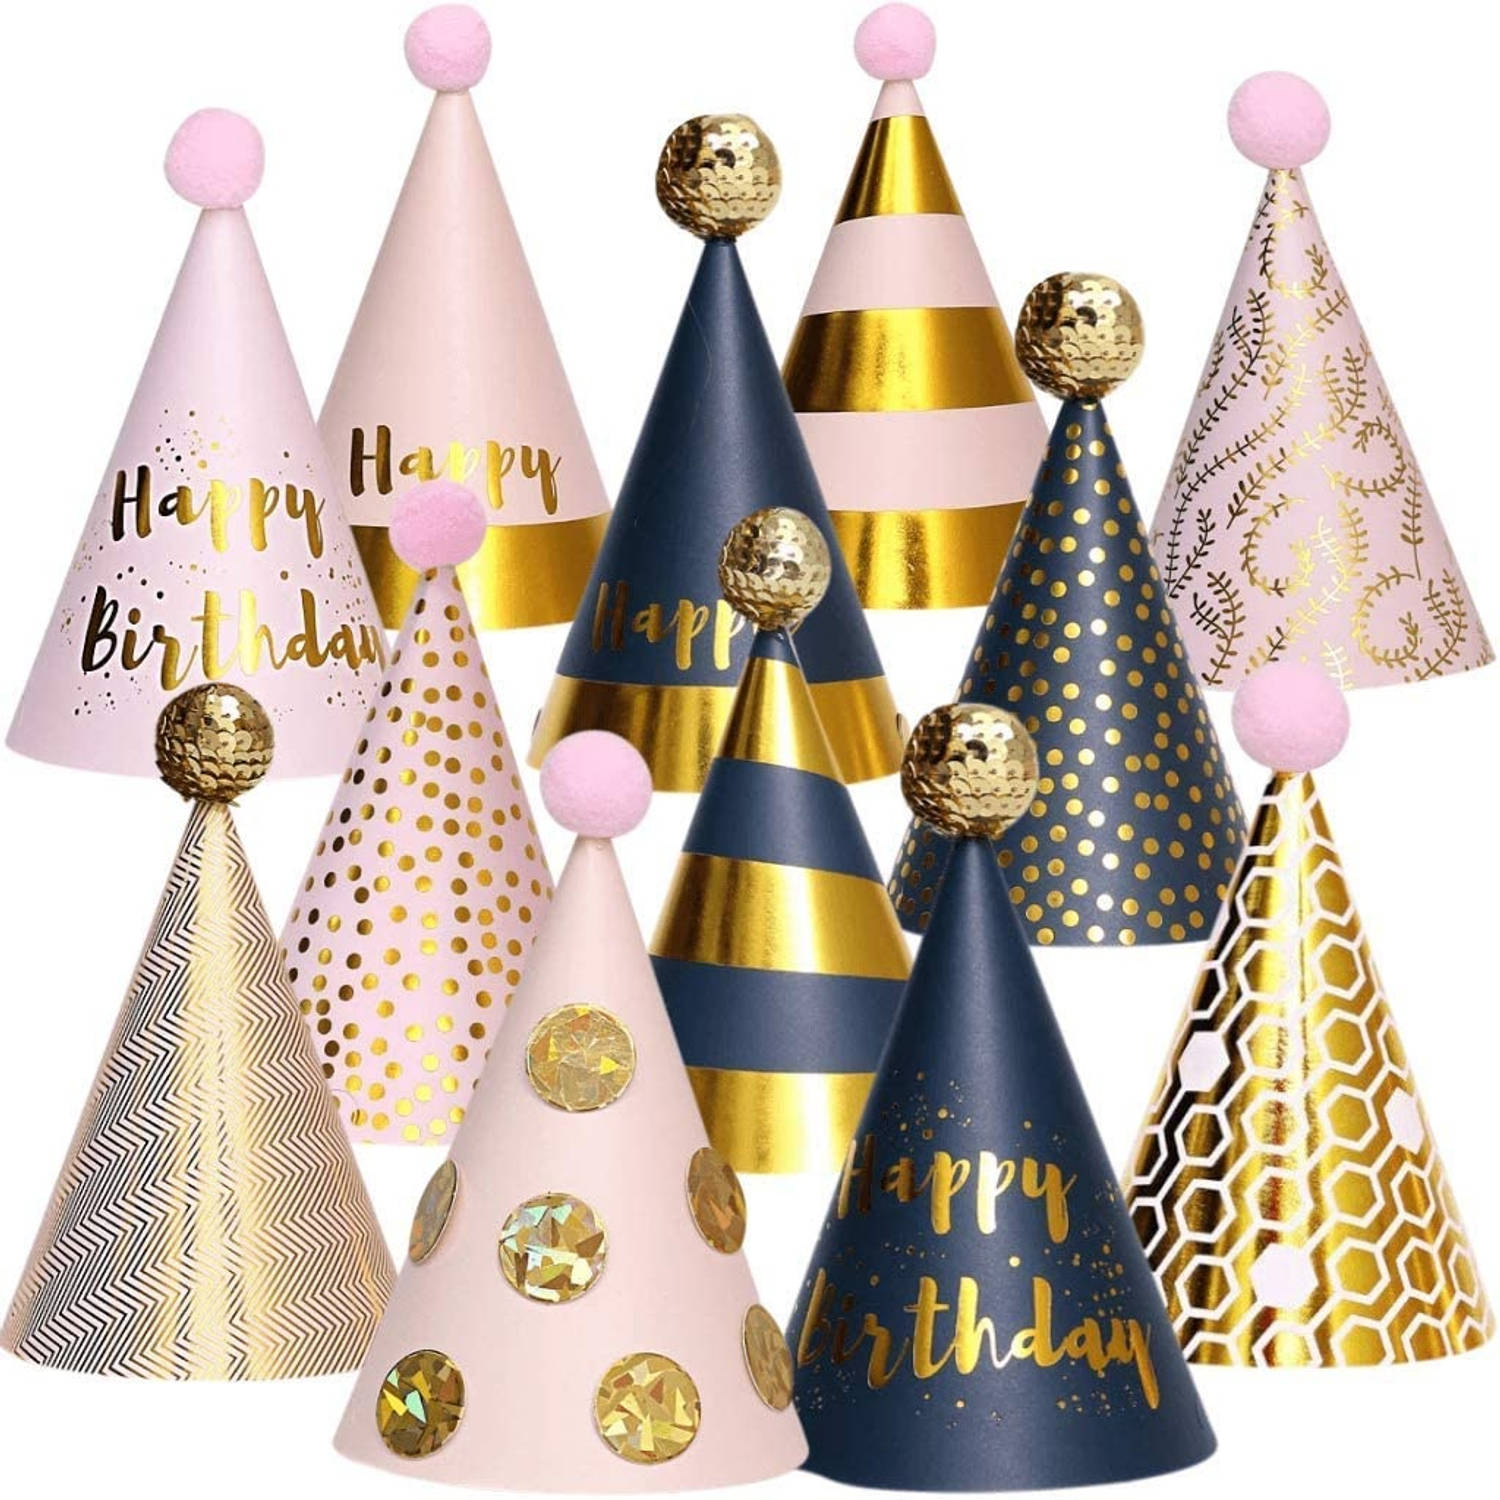 Fissaly® 12 Stuks Happy Birthday Feesthoedjes Karton – Volwassen & Kinderen – Verjaardag Feest Papier Hoedjes – Goud, Roze & Zilver